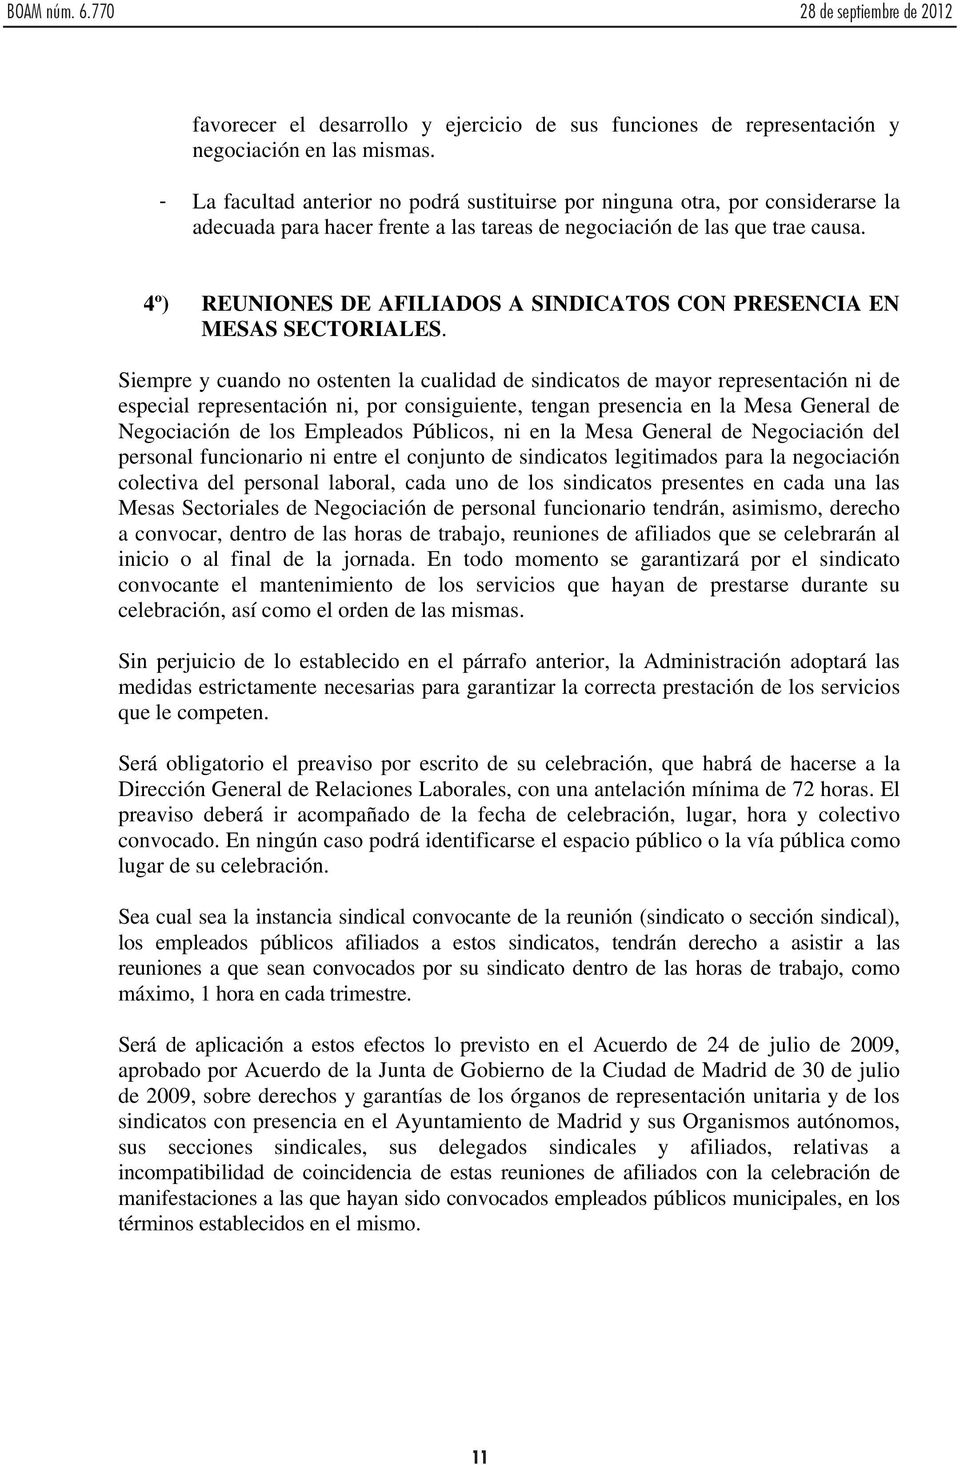 4º) REUNIONES DE AFILIADOS A SINDICATOS CON PRESENCIA EN MESAS SECTORIALES.